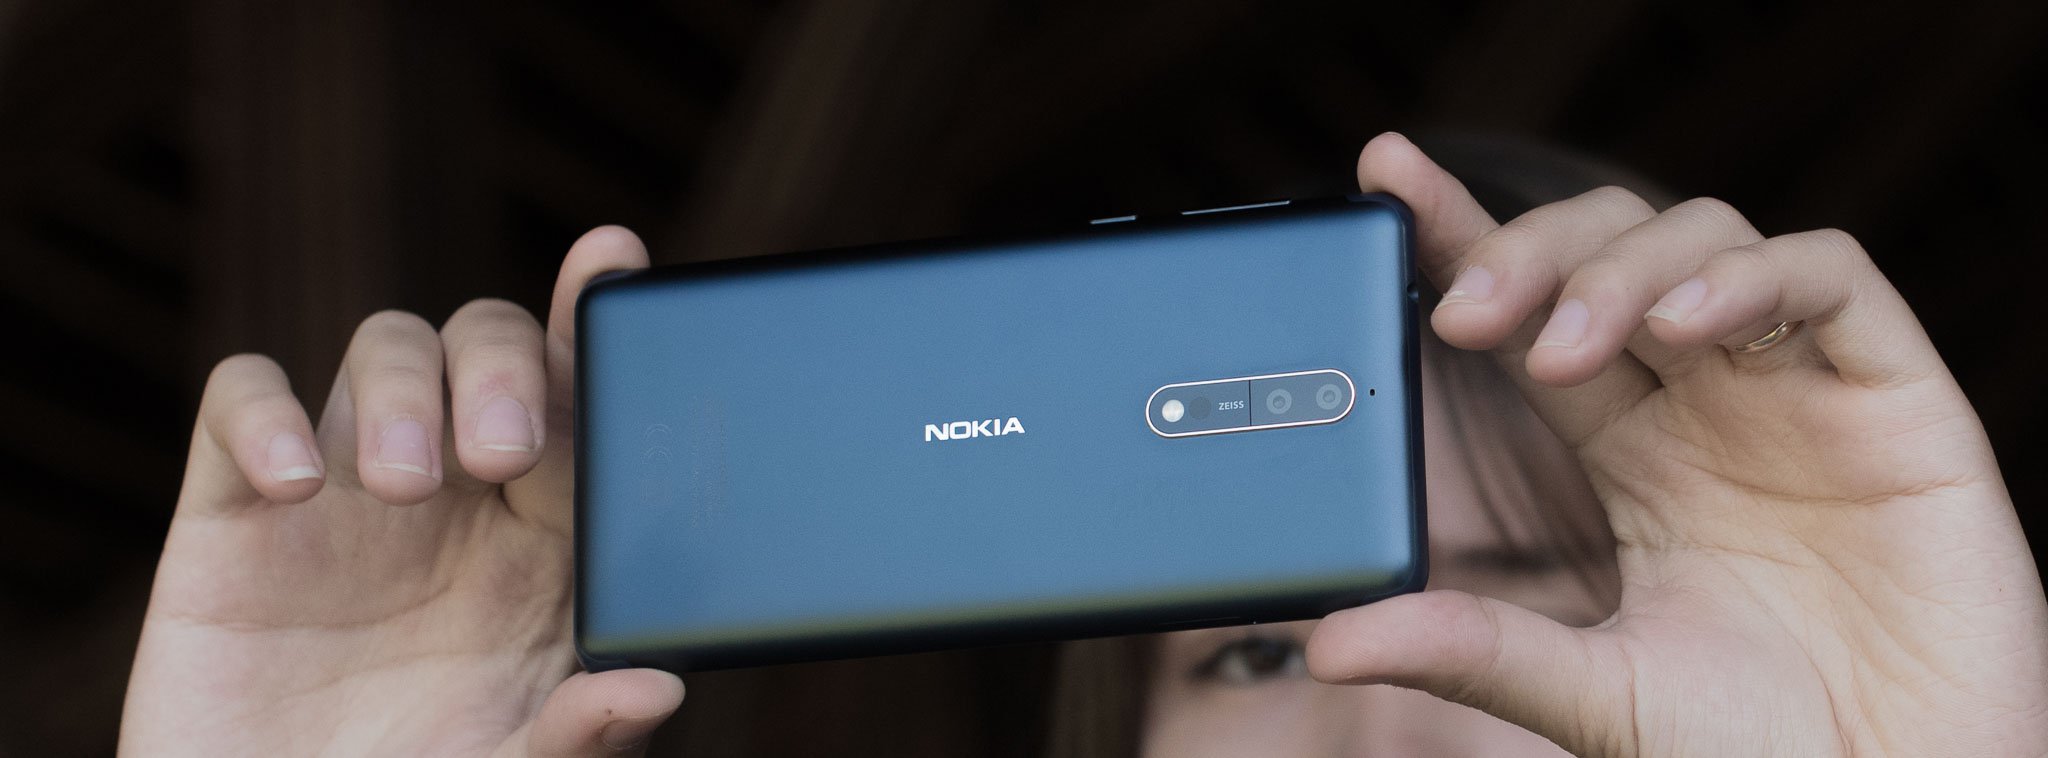 Nokia đã thử nghiệm thành công Android 8 cho Nokia 8, Samsung đưa ra bản beta 2